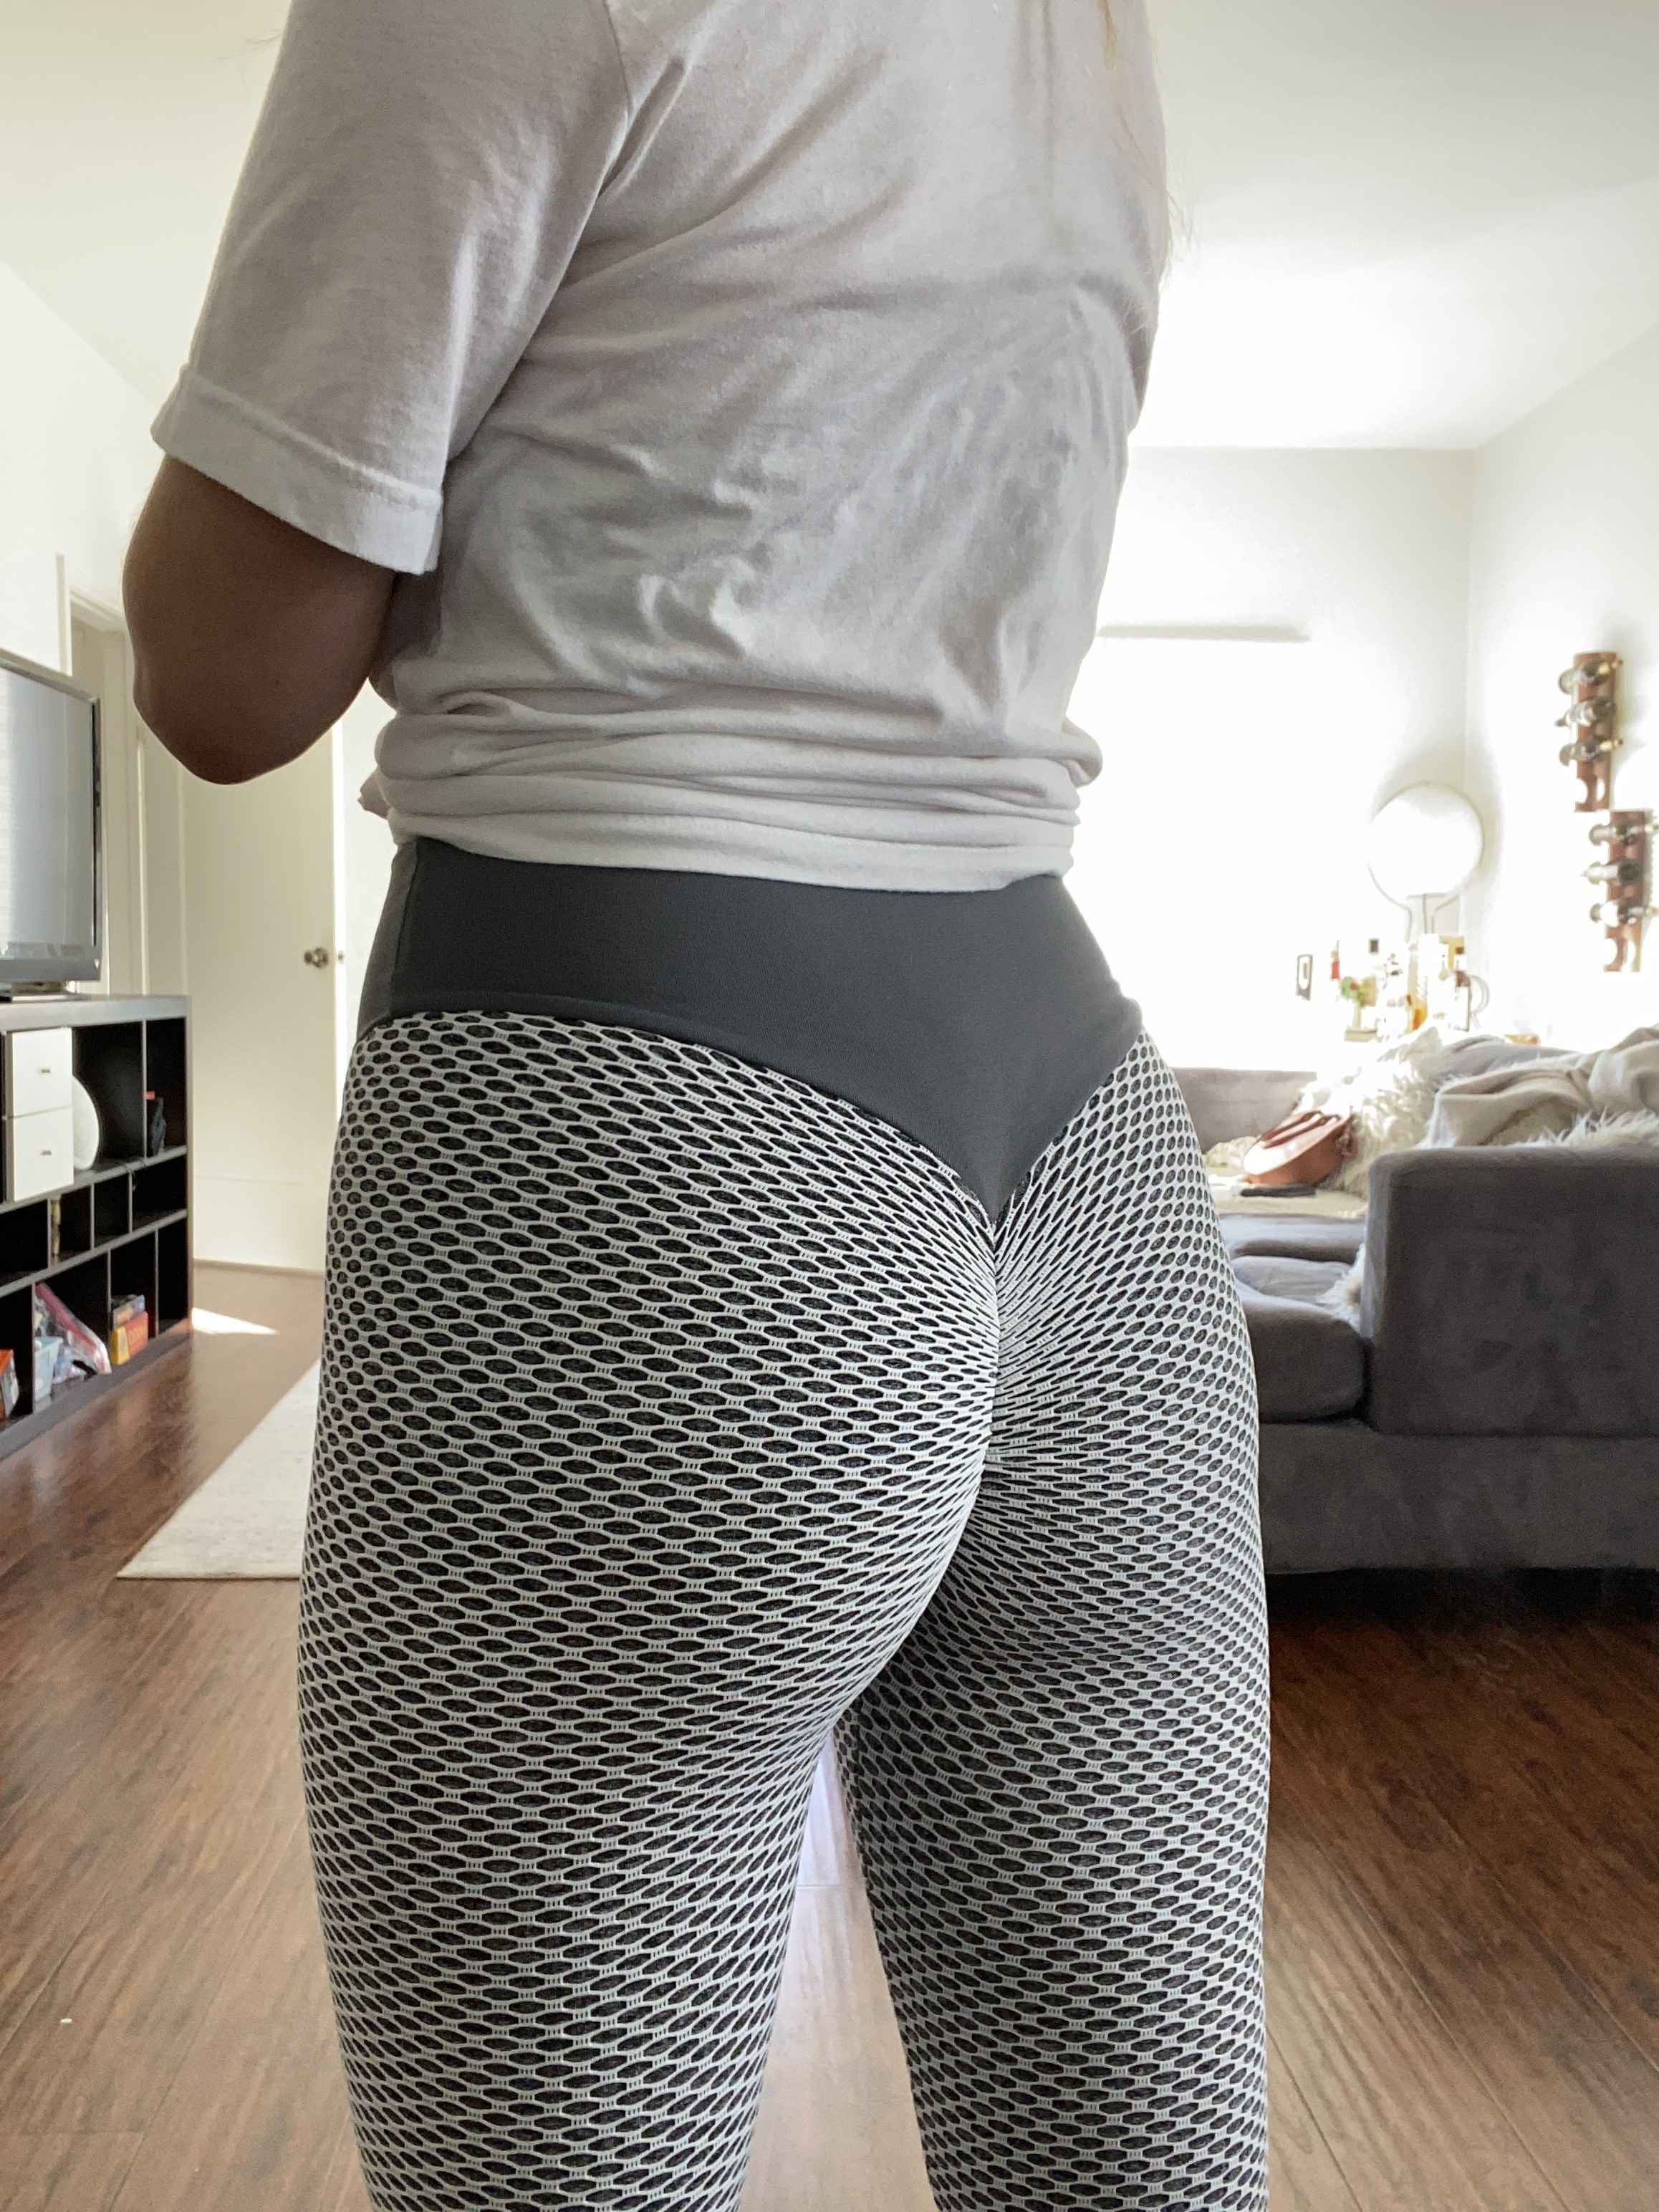 galleries nice ass in leggings selfies